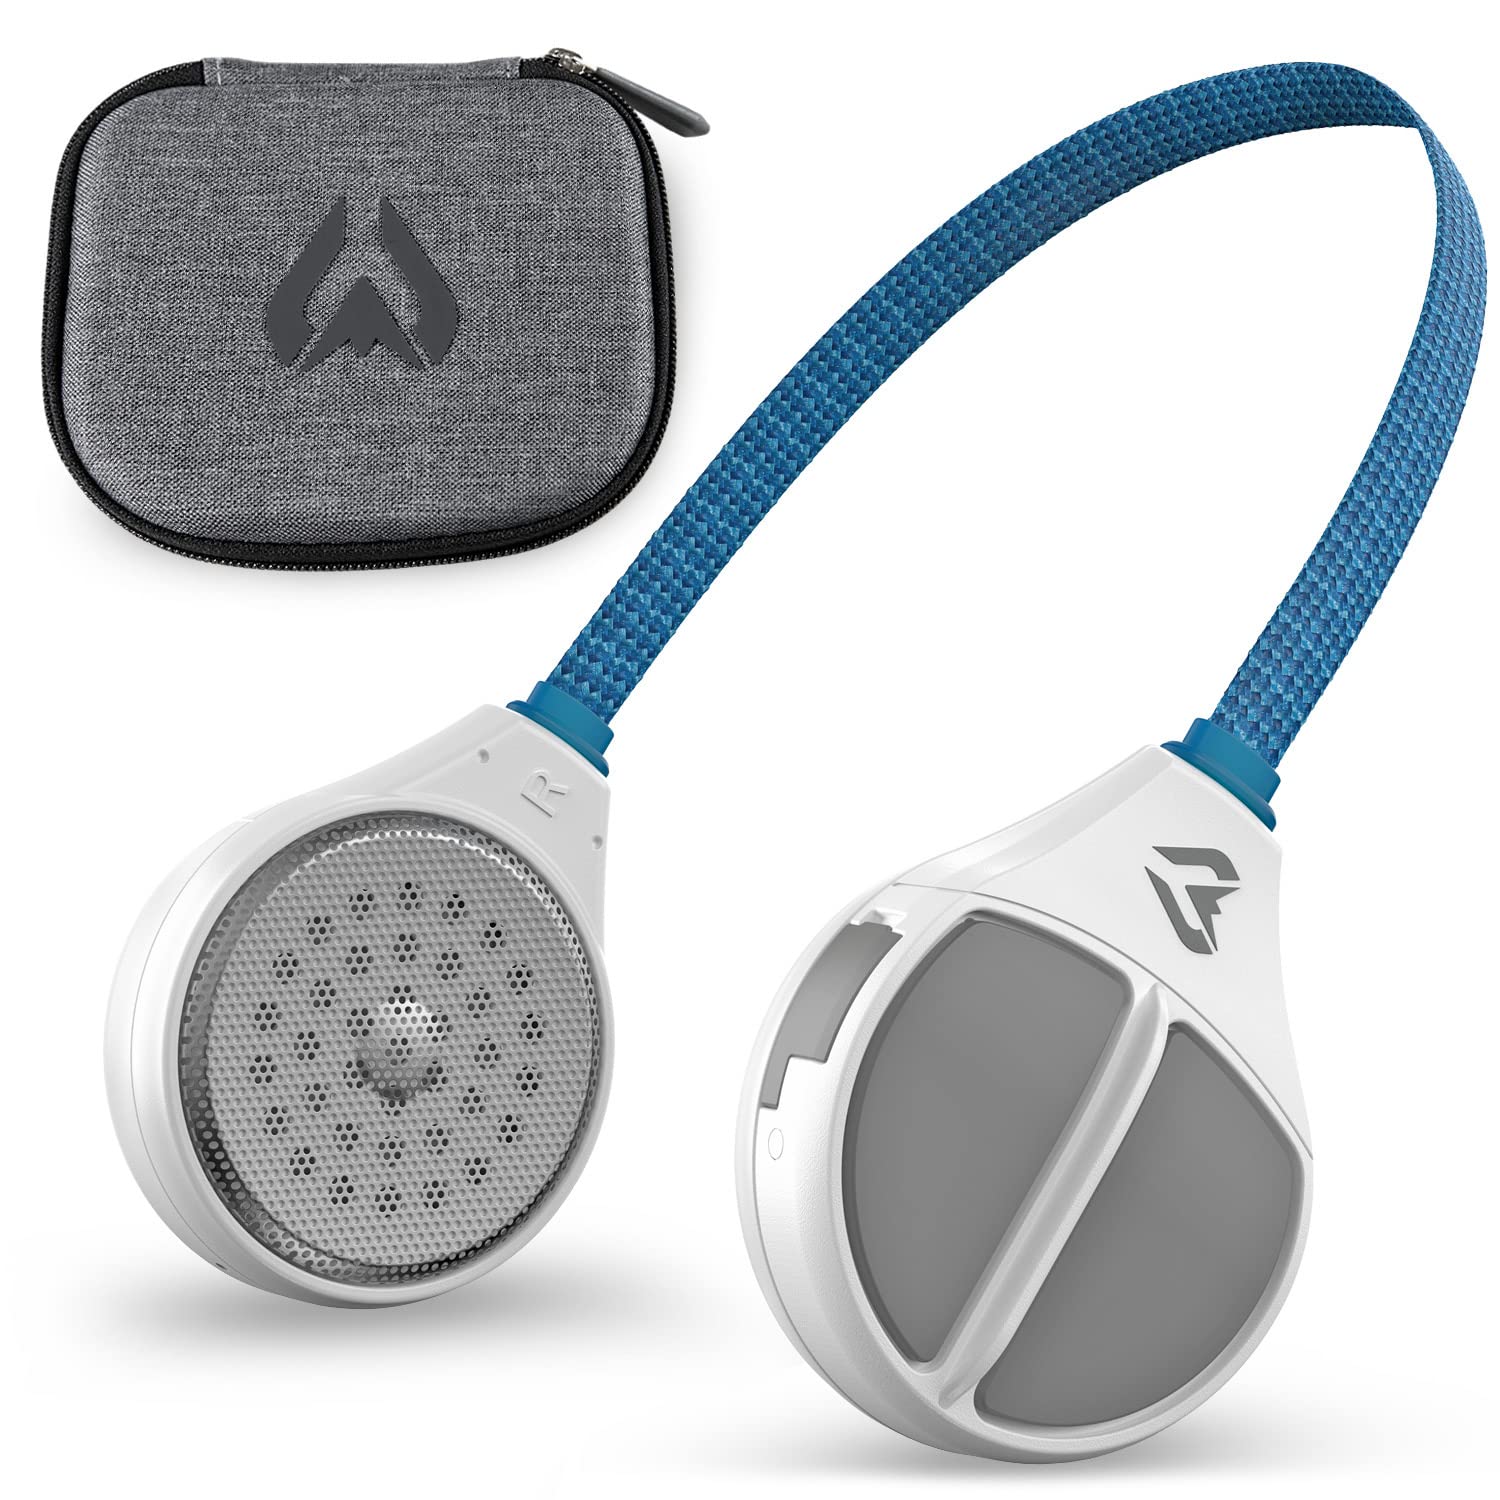  Wildhorn Alta ワイヤレス Bluetooth、ドロップイン ヘッドフォン - HD スピーカーと互換性のあるあらゆるオーディオ対応スキー/スノーボード ヘルメット...